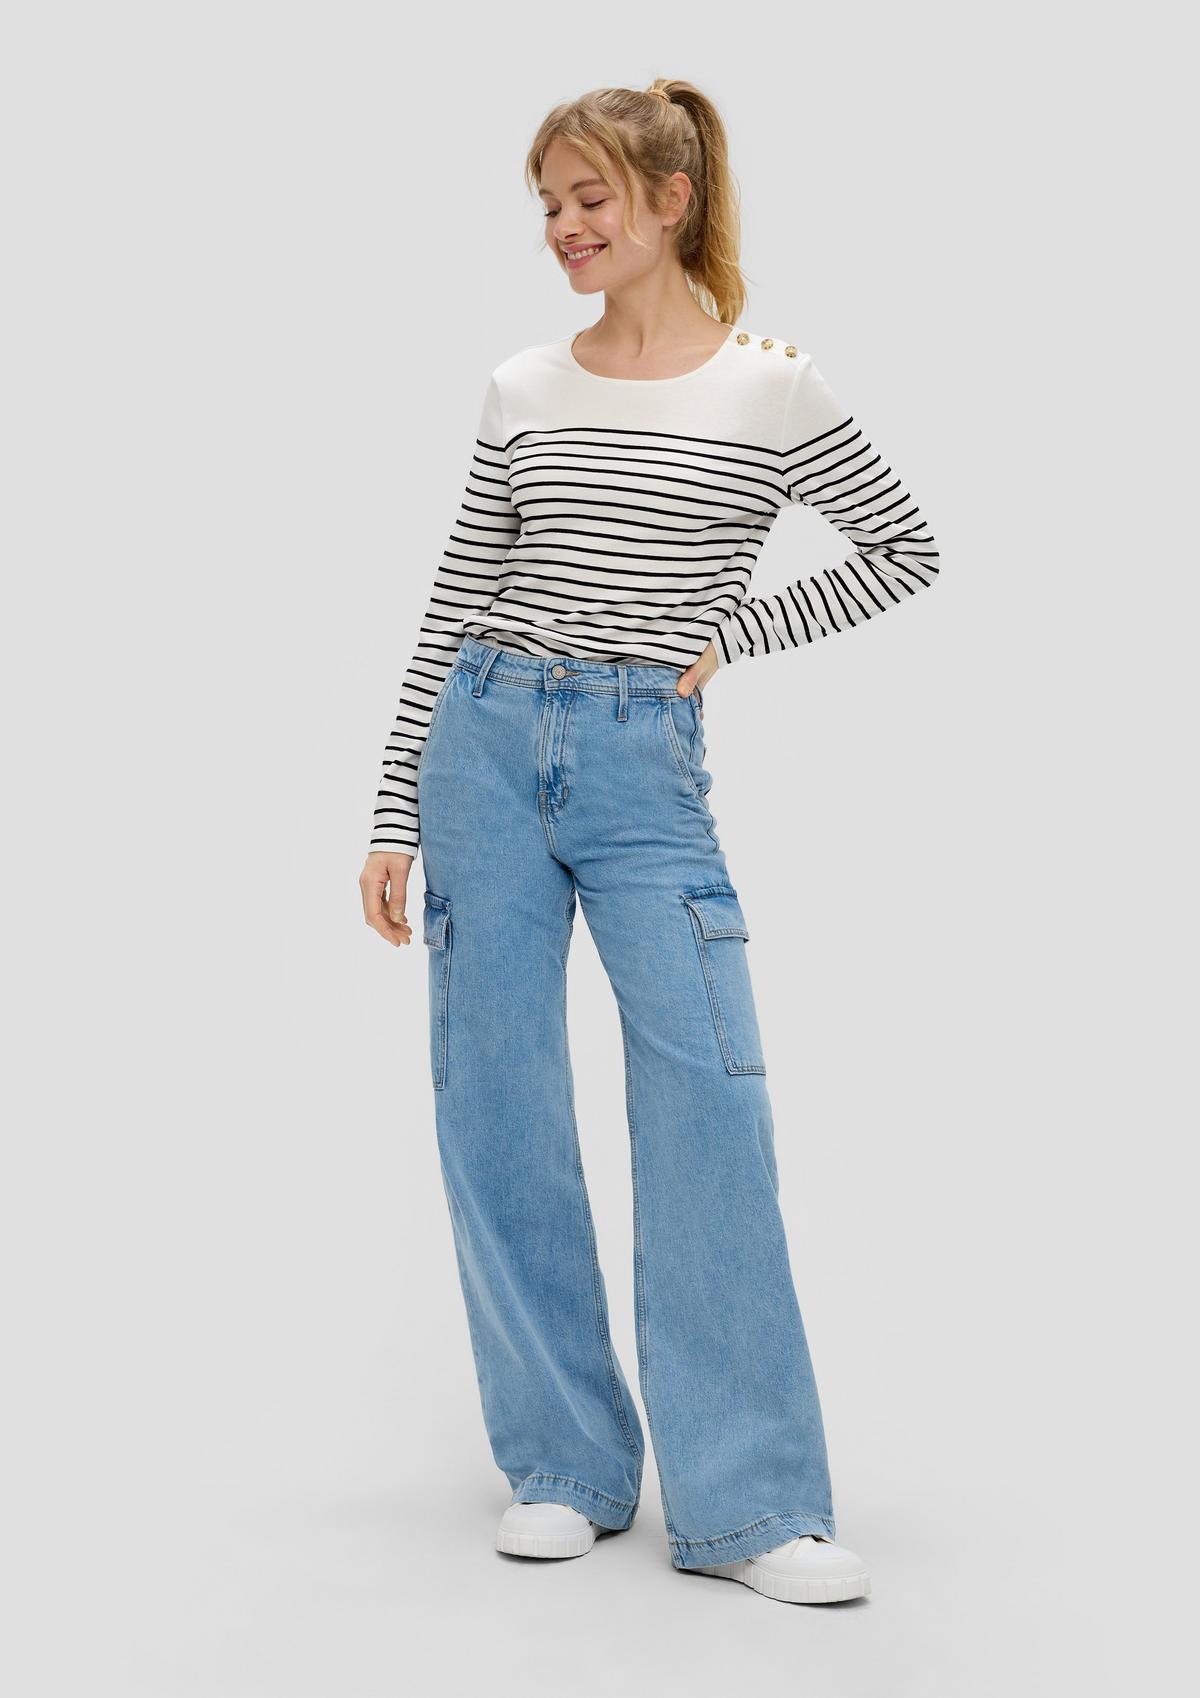 Jeans hlače/kroj Mid Rise/široke hlačnice /veliki žepi